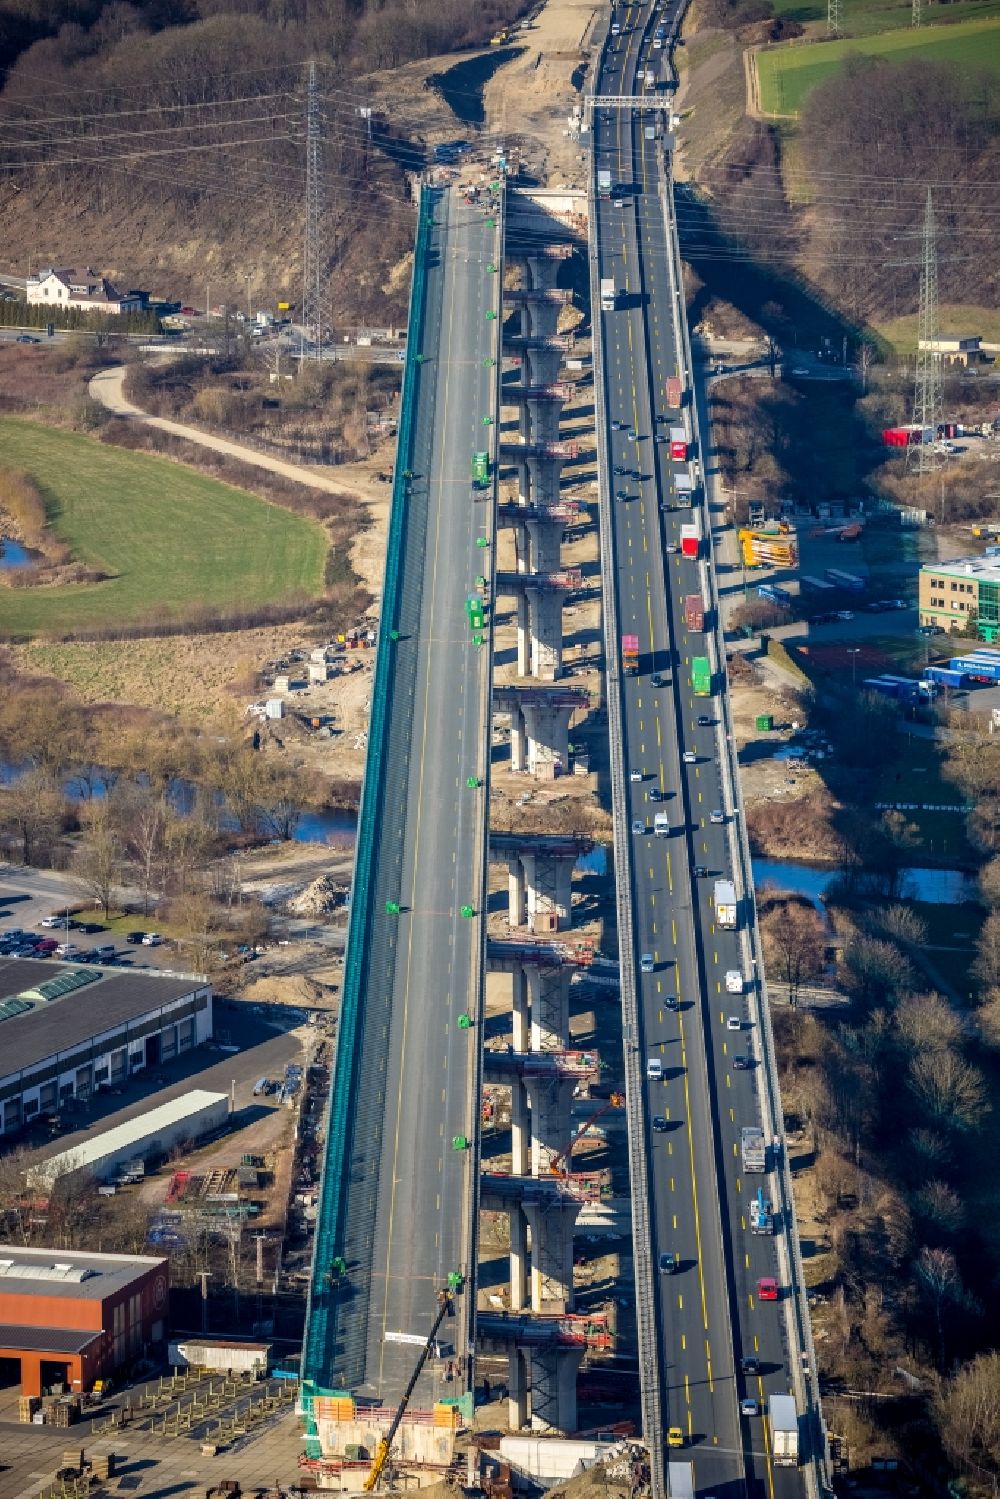 Hagen aus der Vogelperspektive: Ersatzneubau Lennetalbrücke der Autobahn BAB A45 in Hagen im Bundesland Nordrhein-Westfalen